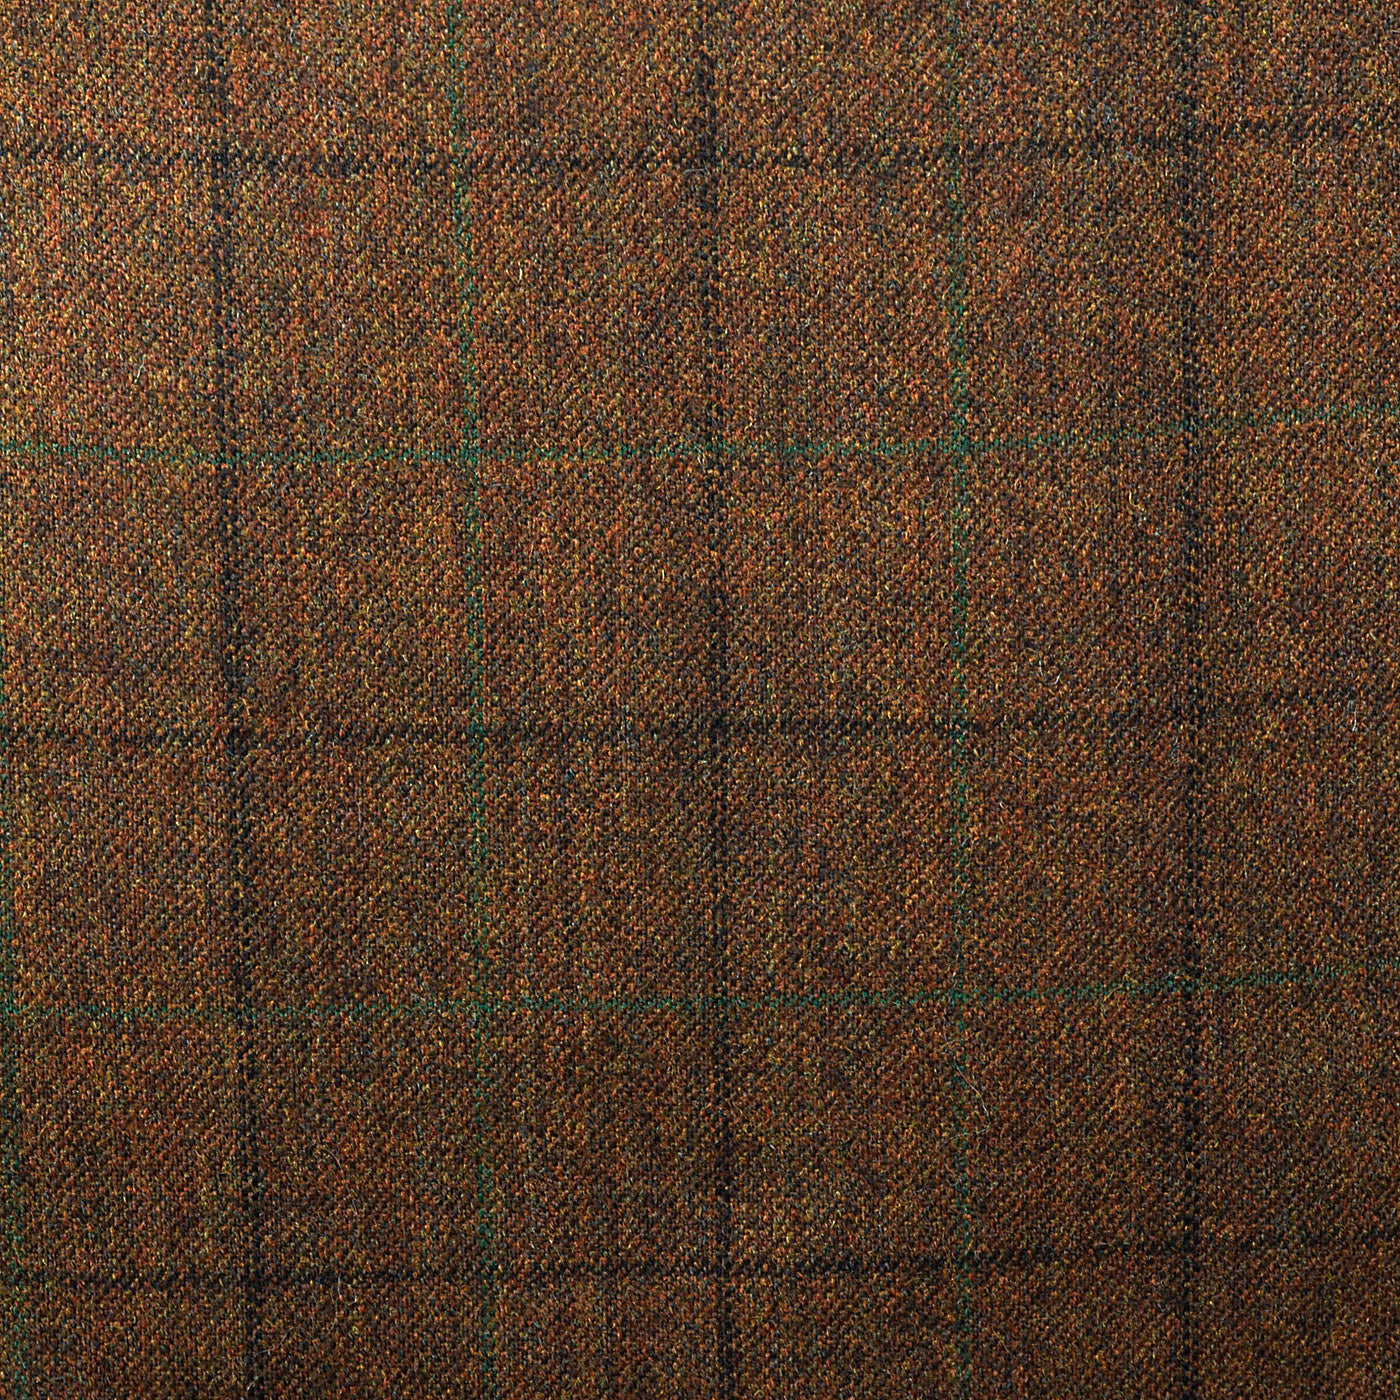 1970s Mens Brown Wool Windowpane Suit